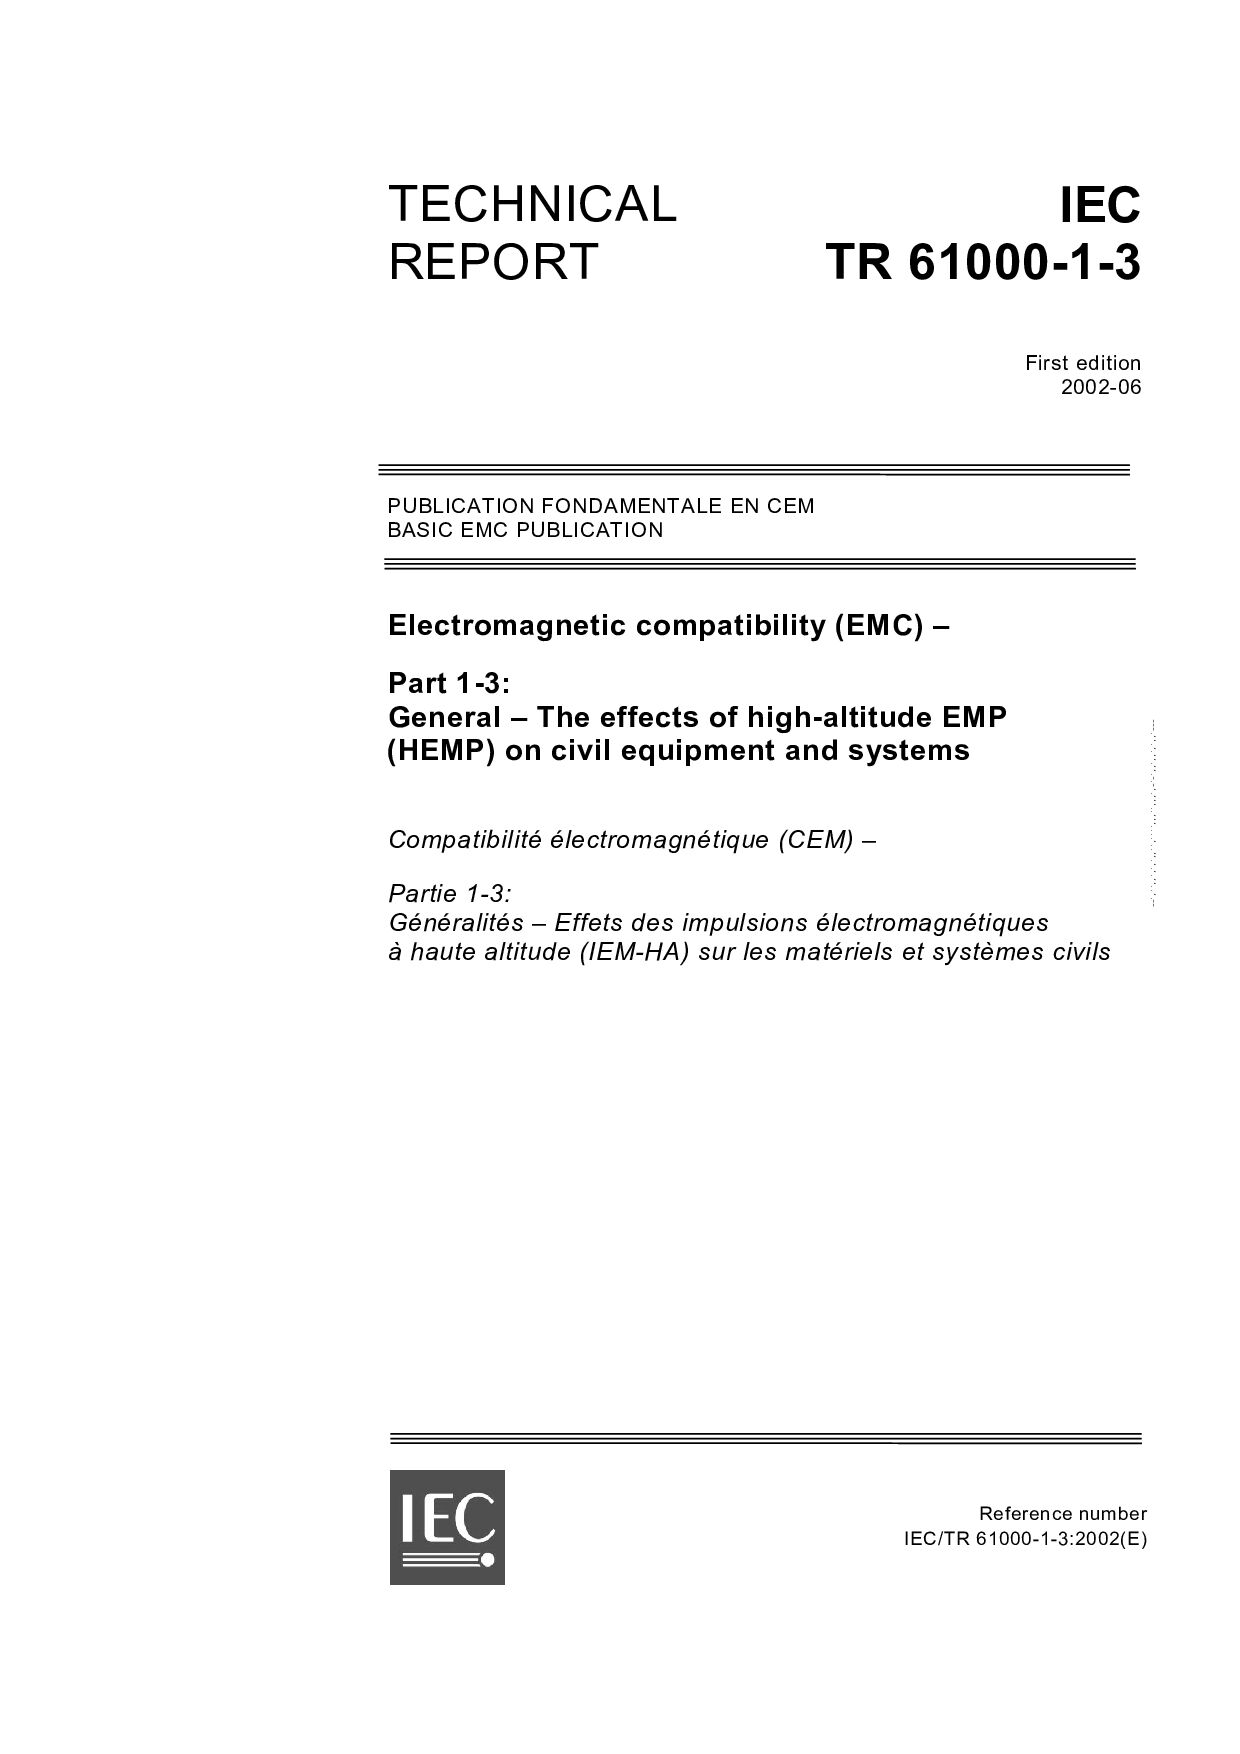 IEC TR 61000-1-3:2002封面图